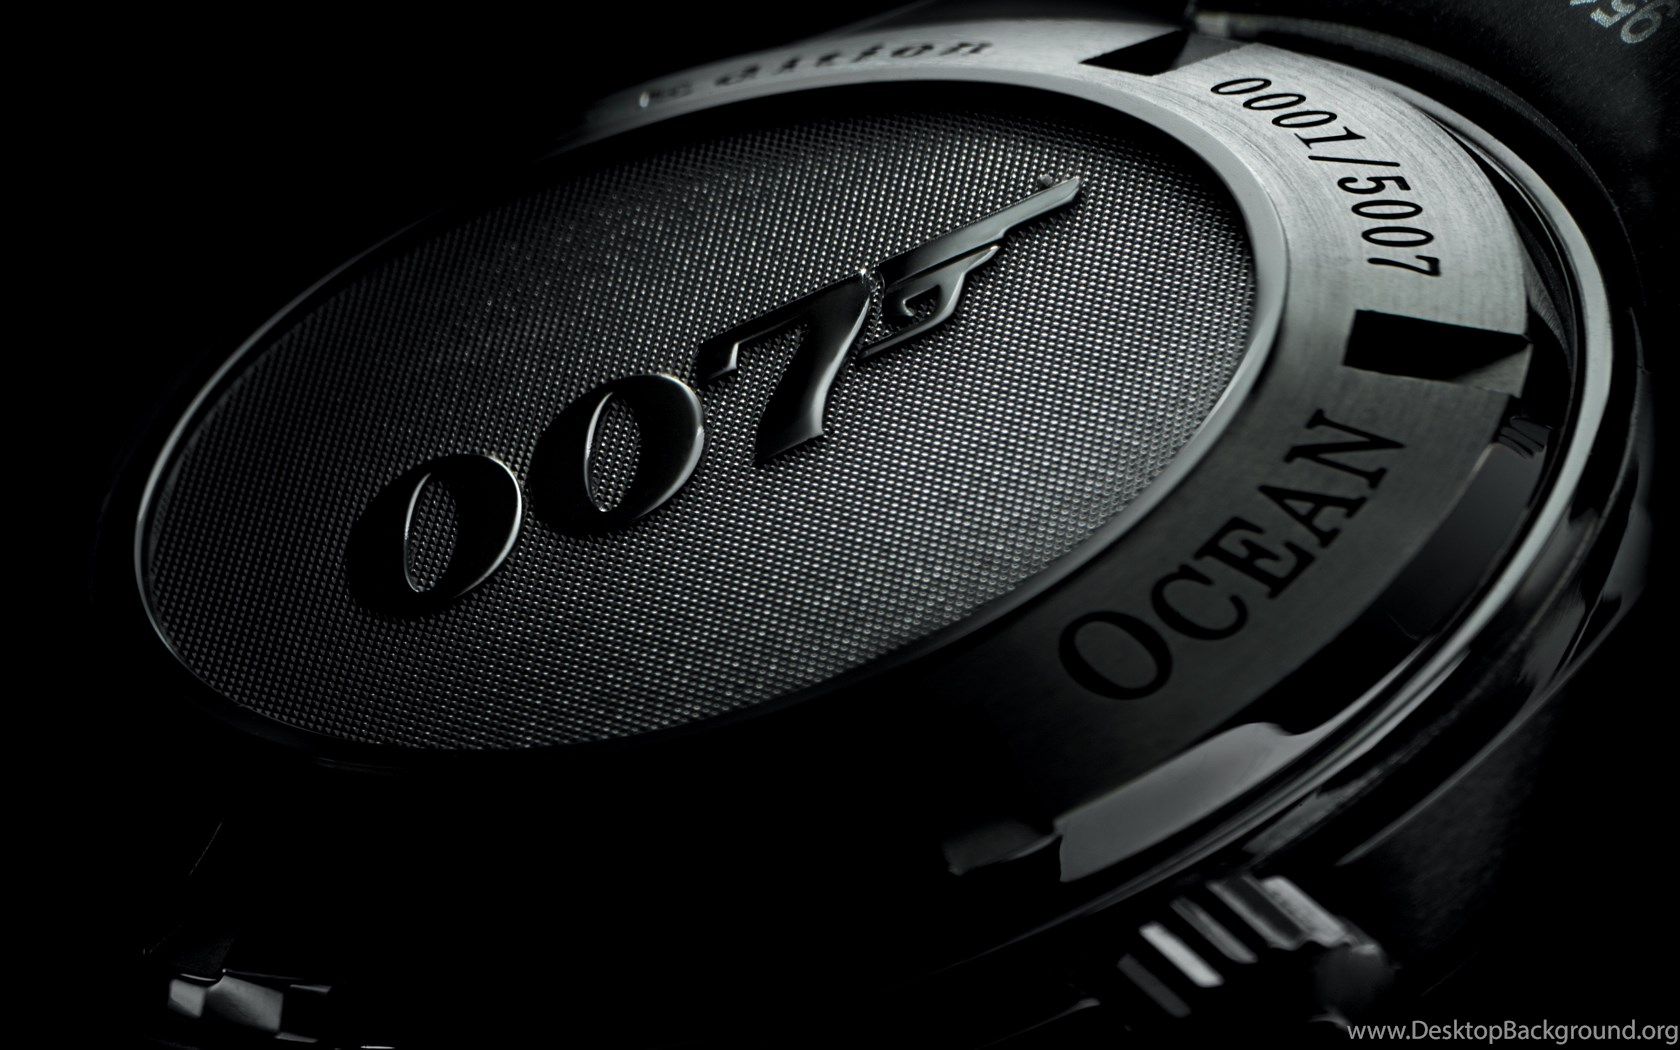 james bond 007 wallpaper,schwarz,beobachten,nahansicht,fotografie,audiogeräte